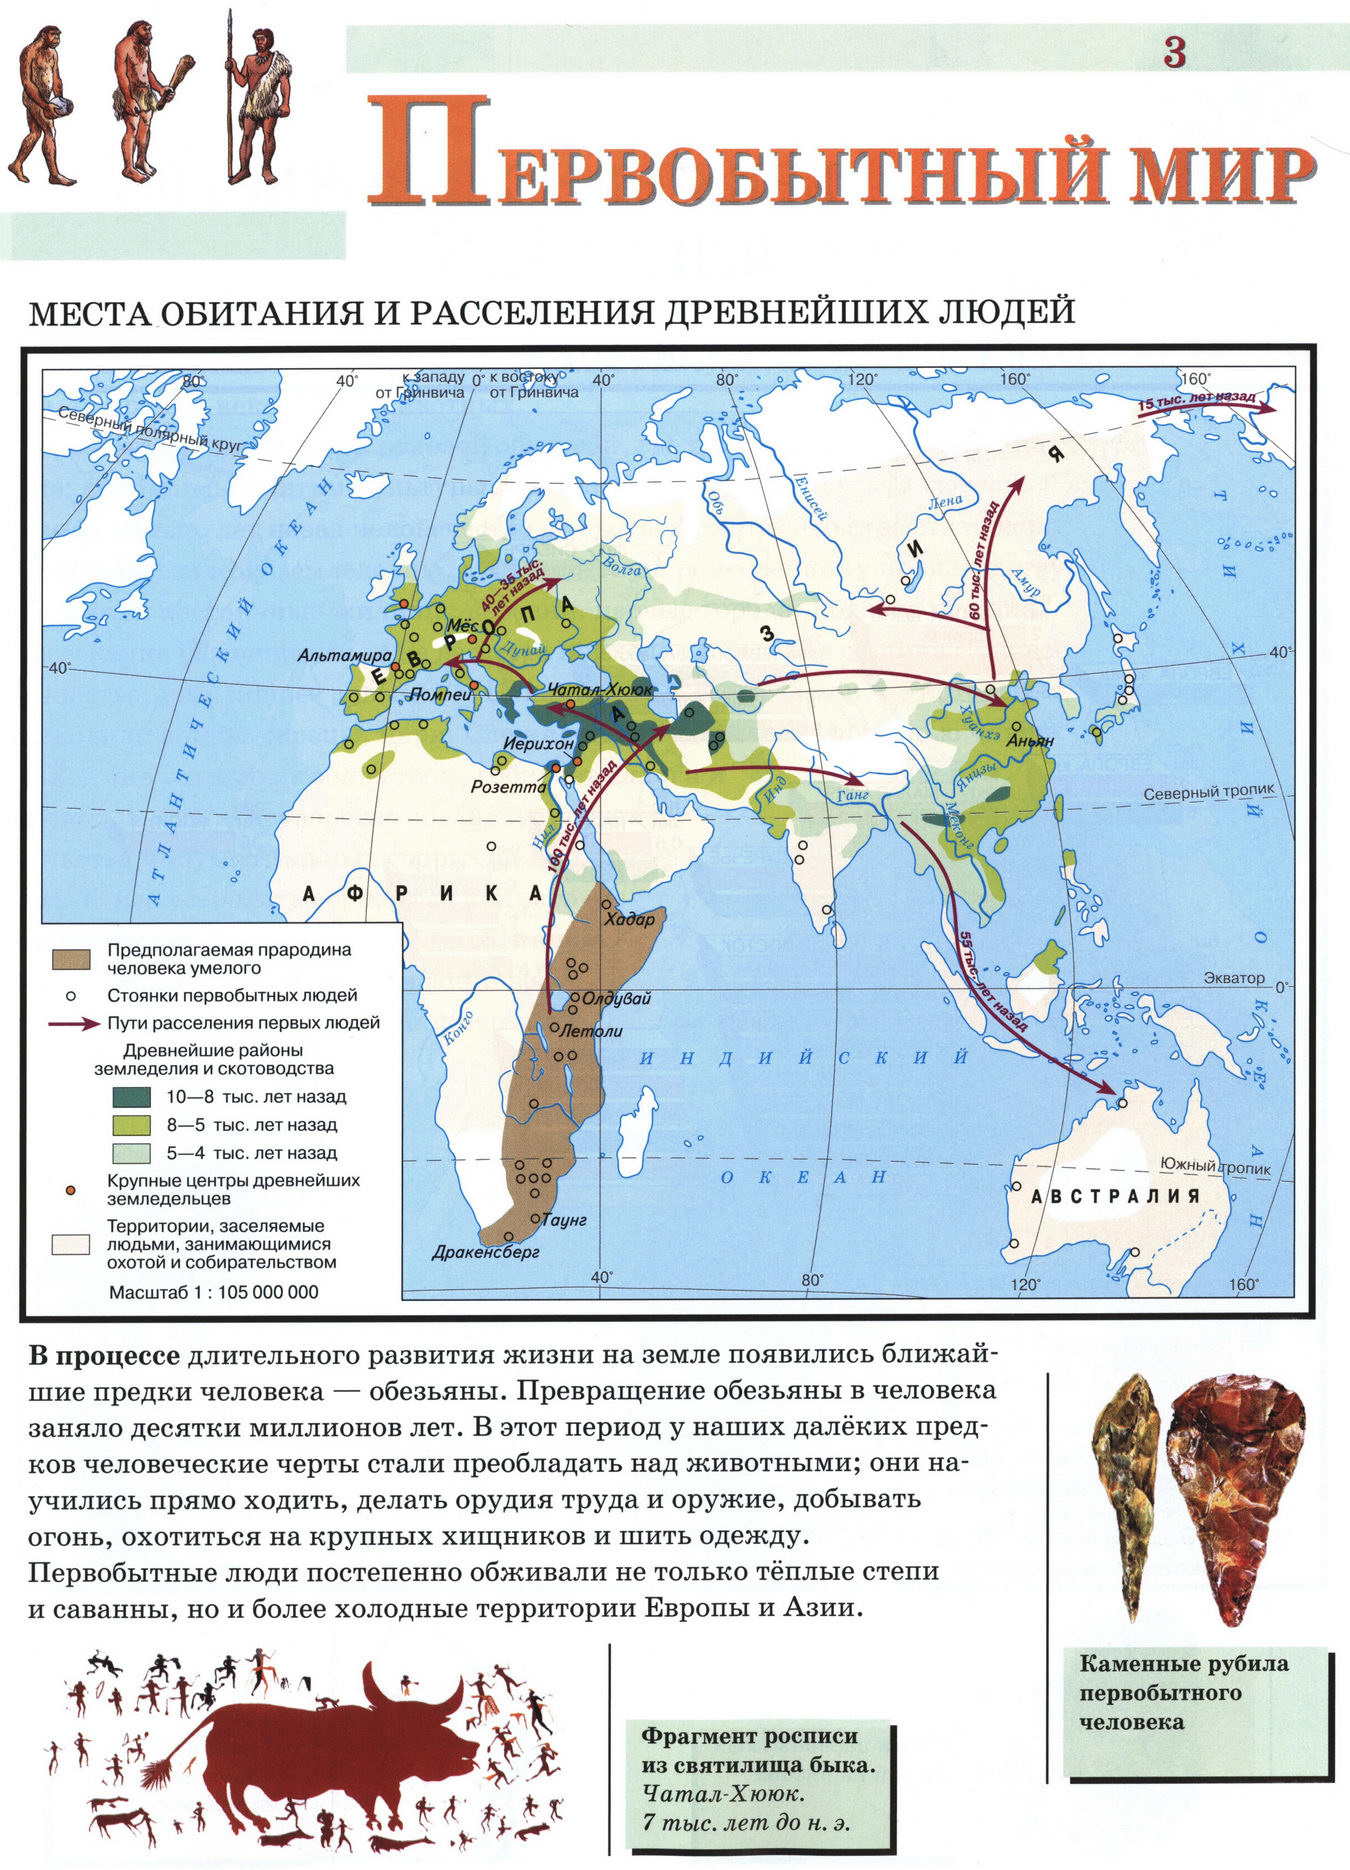 Первобытный мир - карта атласа по истории Древнего мира, 5 класс, Дрофа 2019